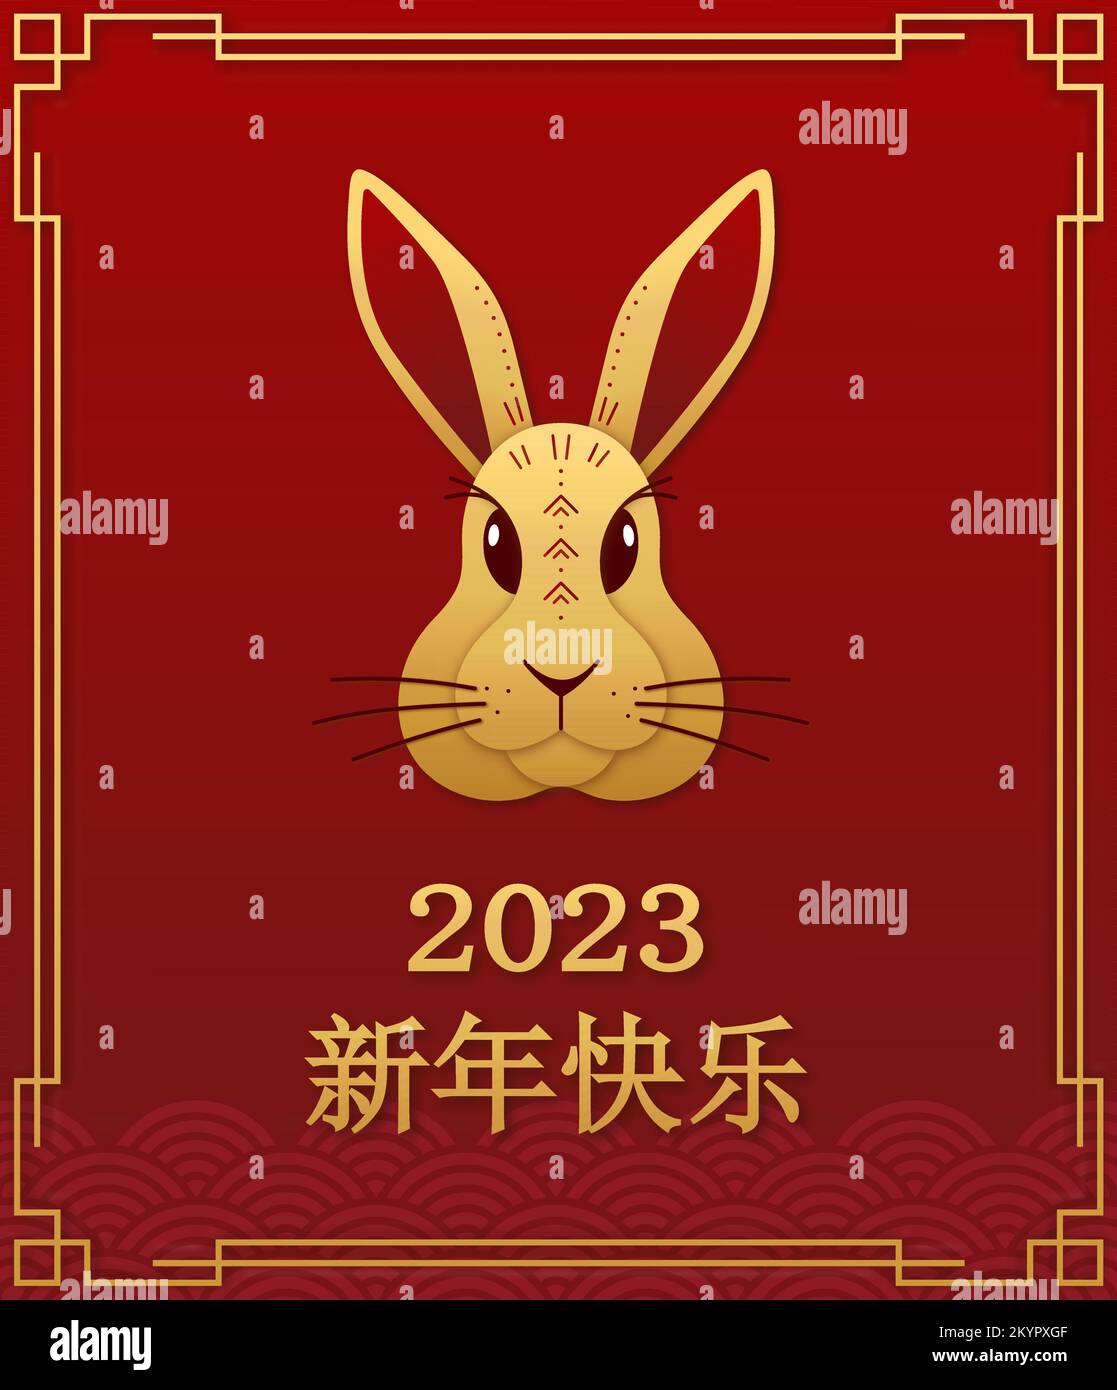 Nouvelle année chinoise 2023 année du lapin - symbole du zodiaque chinois. Illustration vectorielle pour carte de vœux, poster. Traduction chinoise - bonne année Illustration de Vecteur